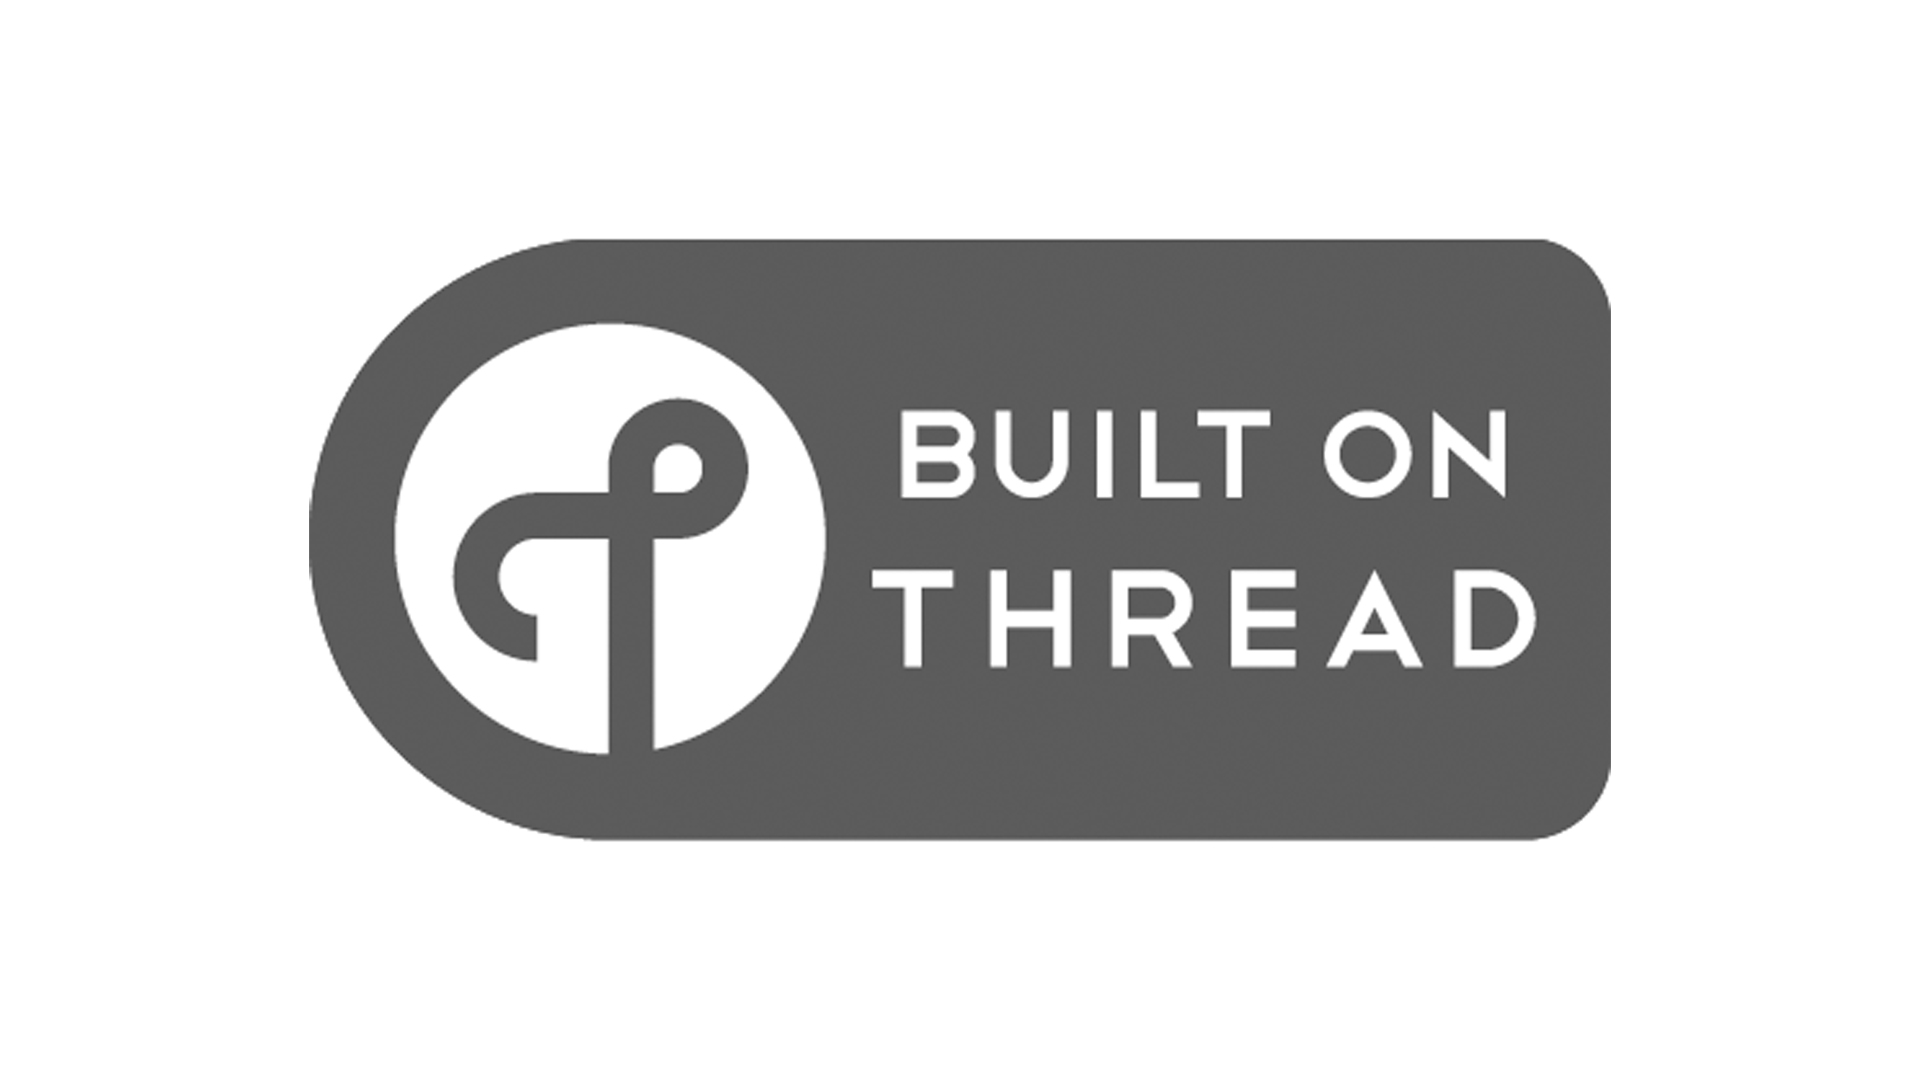 The Built on Thread logo